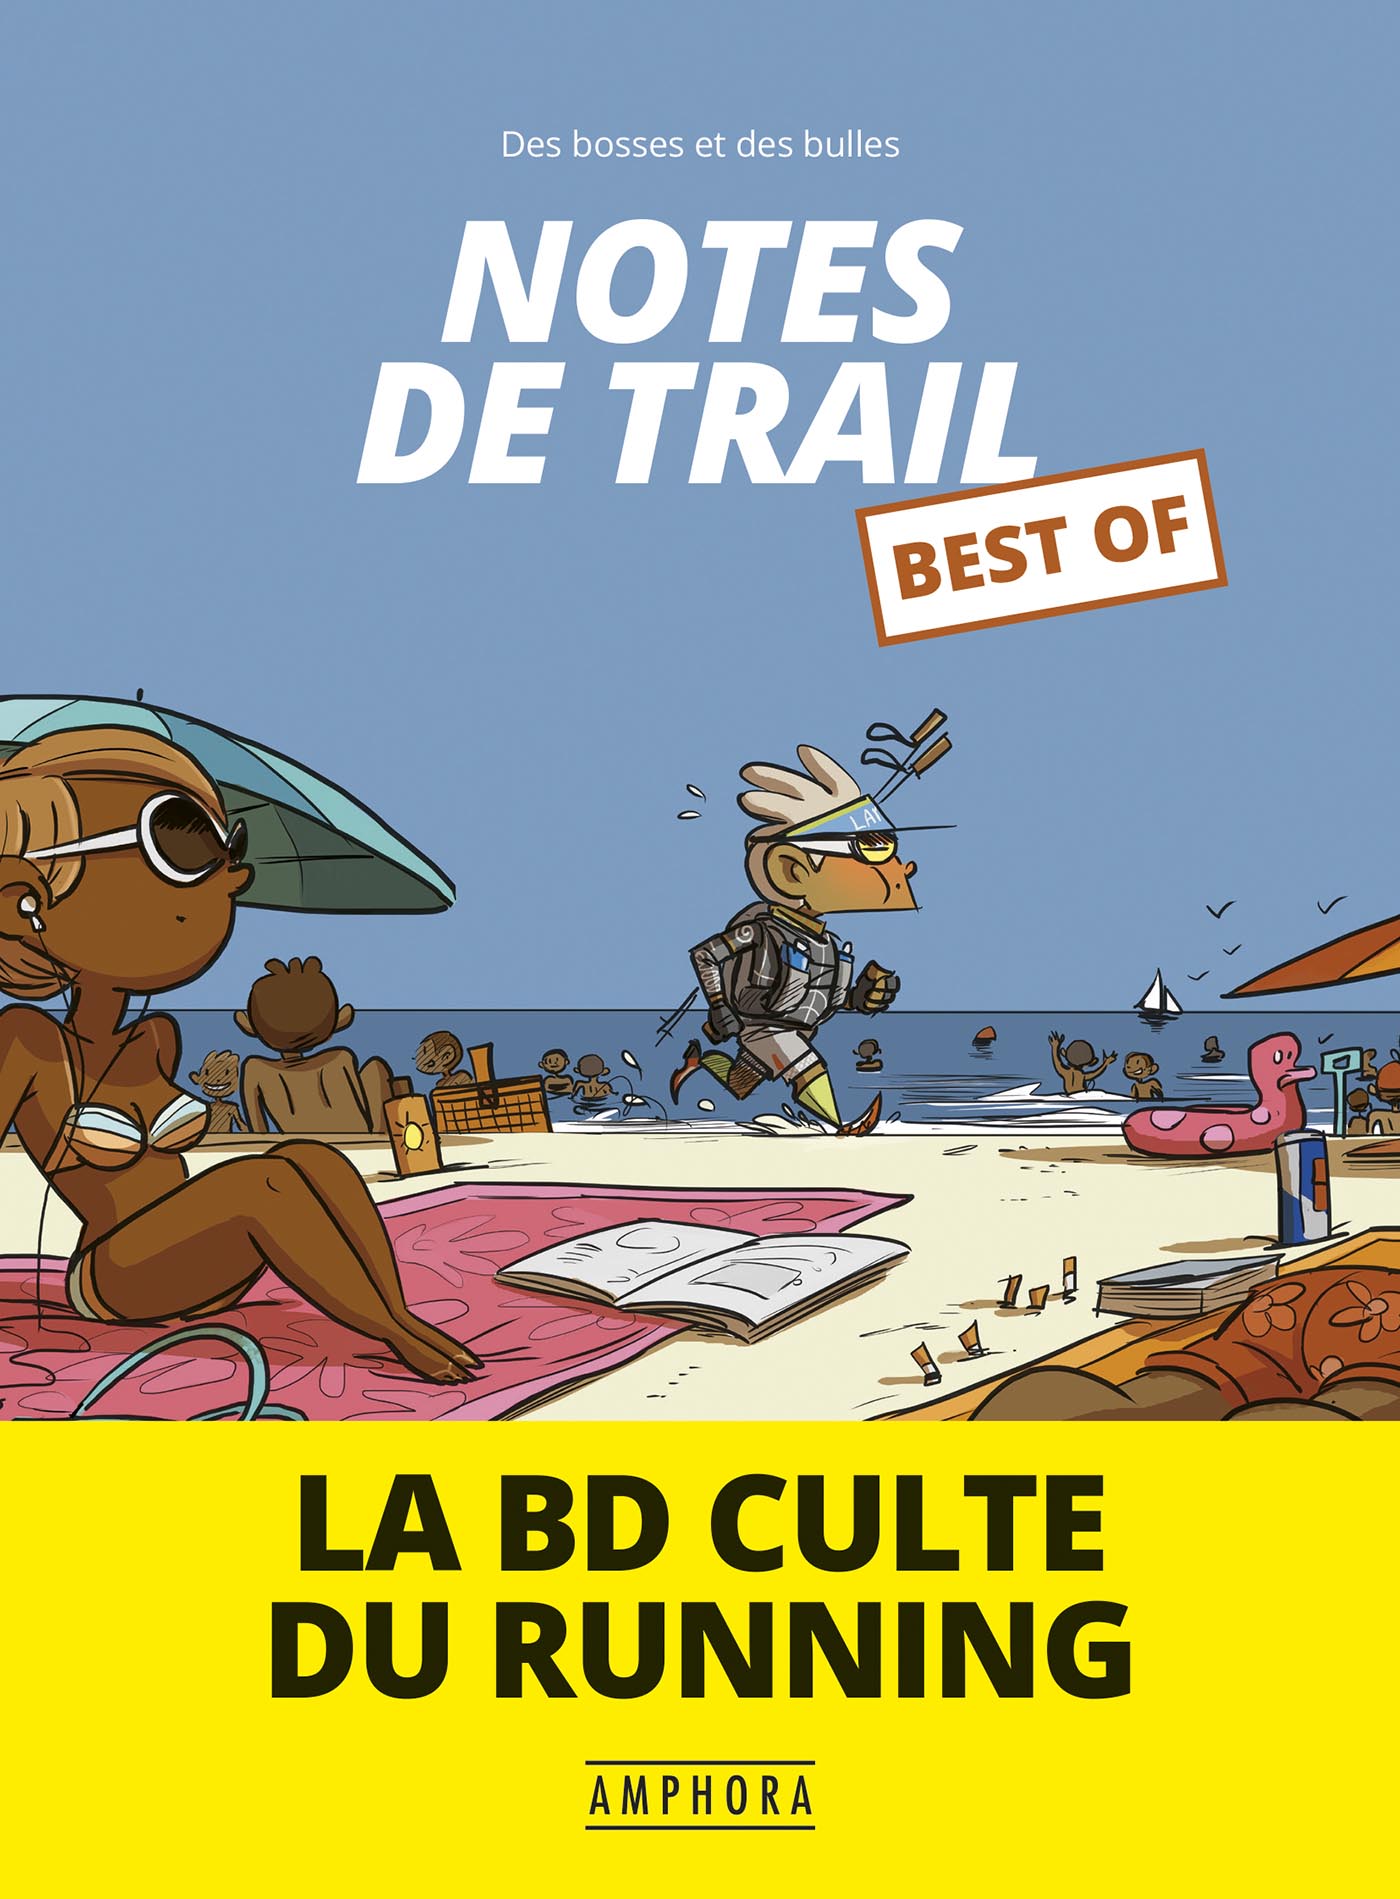 Livre best of note de trail Amphora - Autres sports